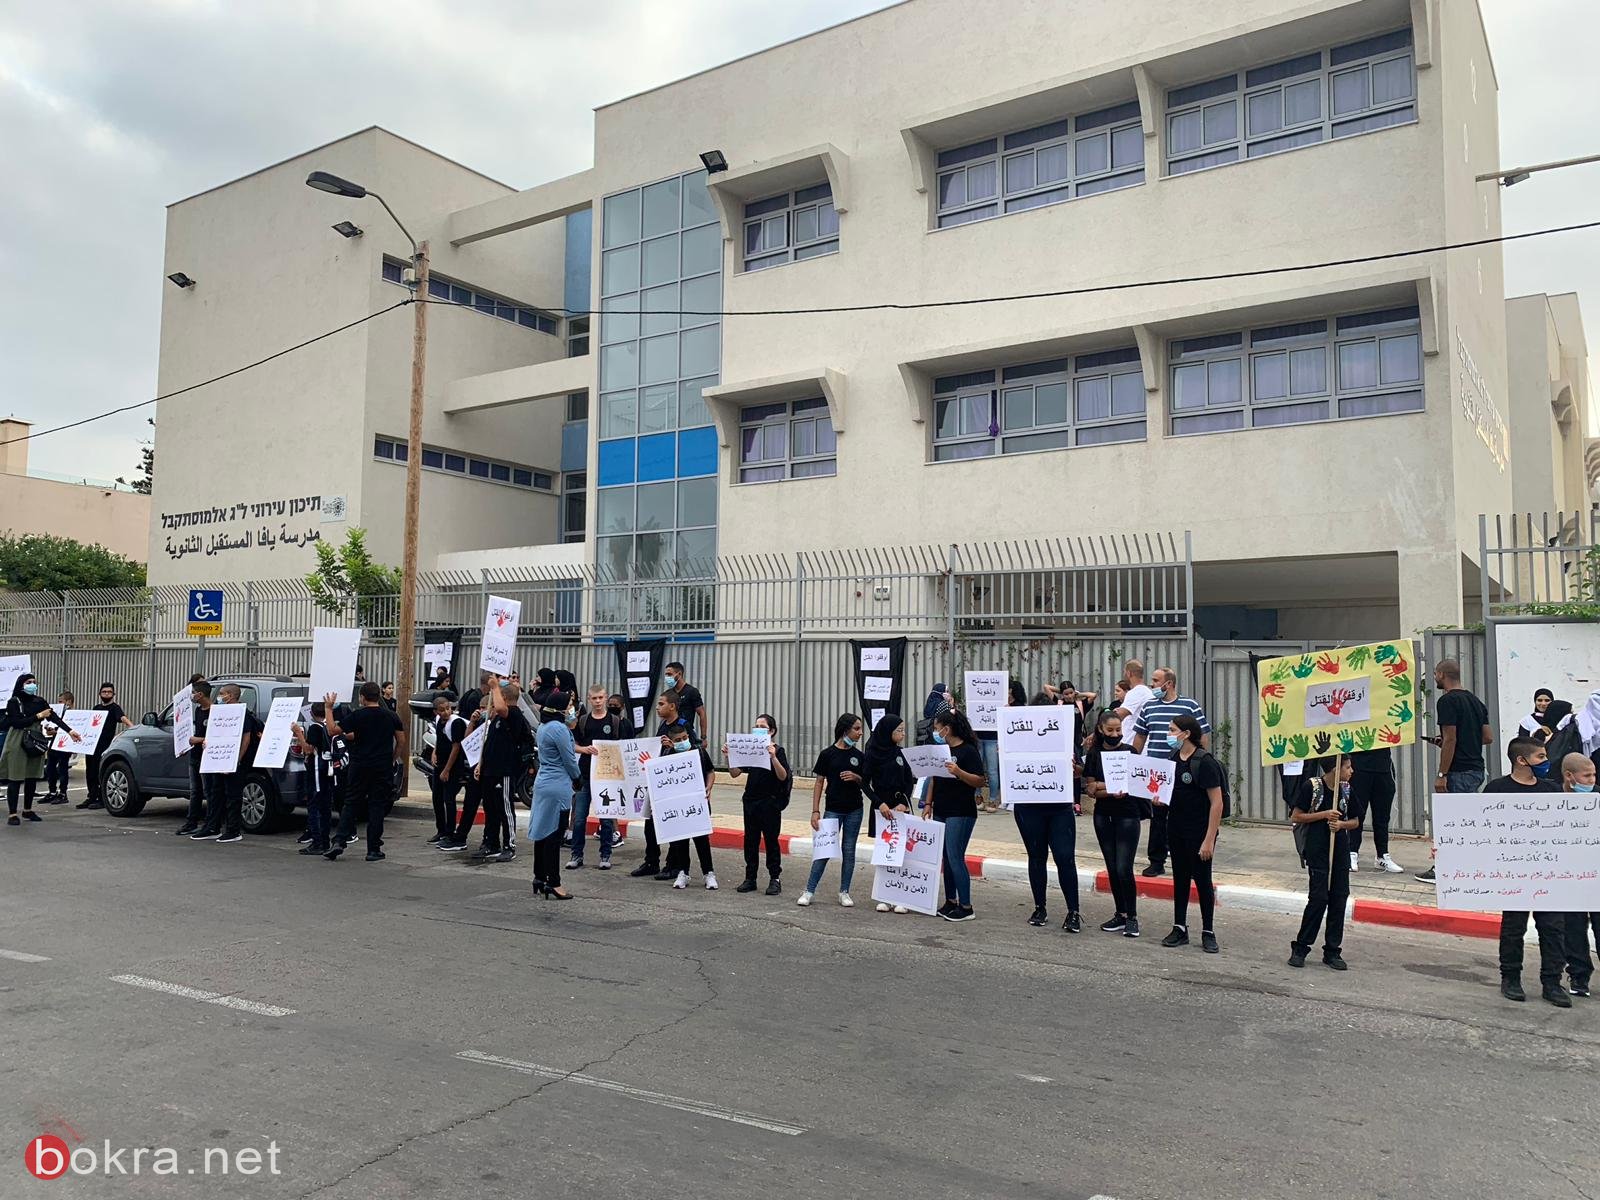 طلاب مدرسة يافا المستقبل يحتجون ضد جرائم القتل والعنف-11